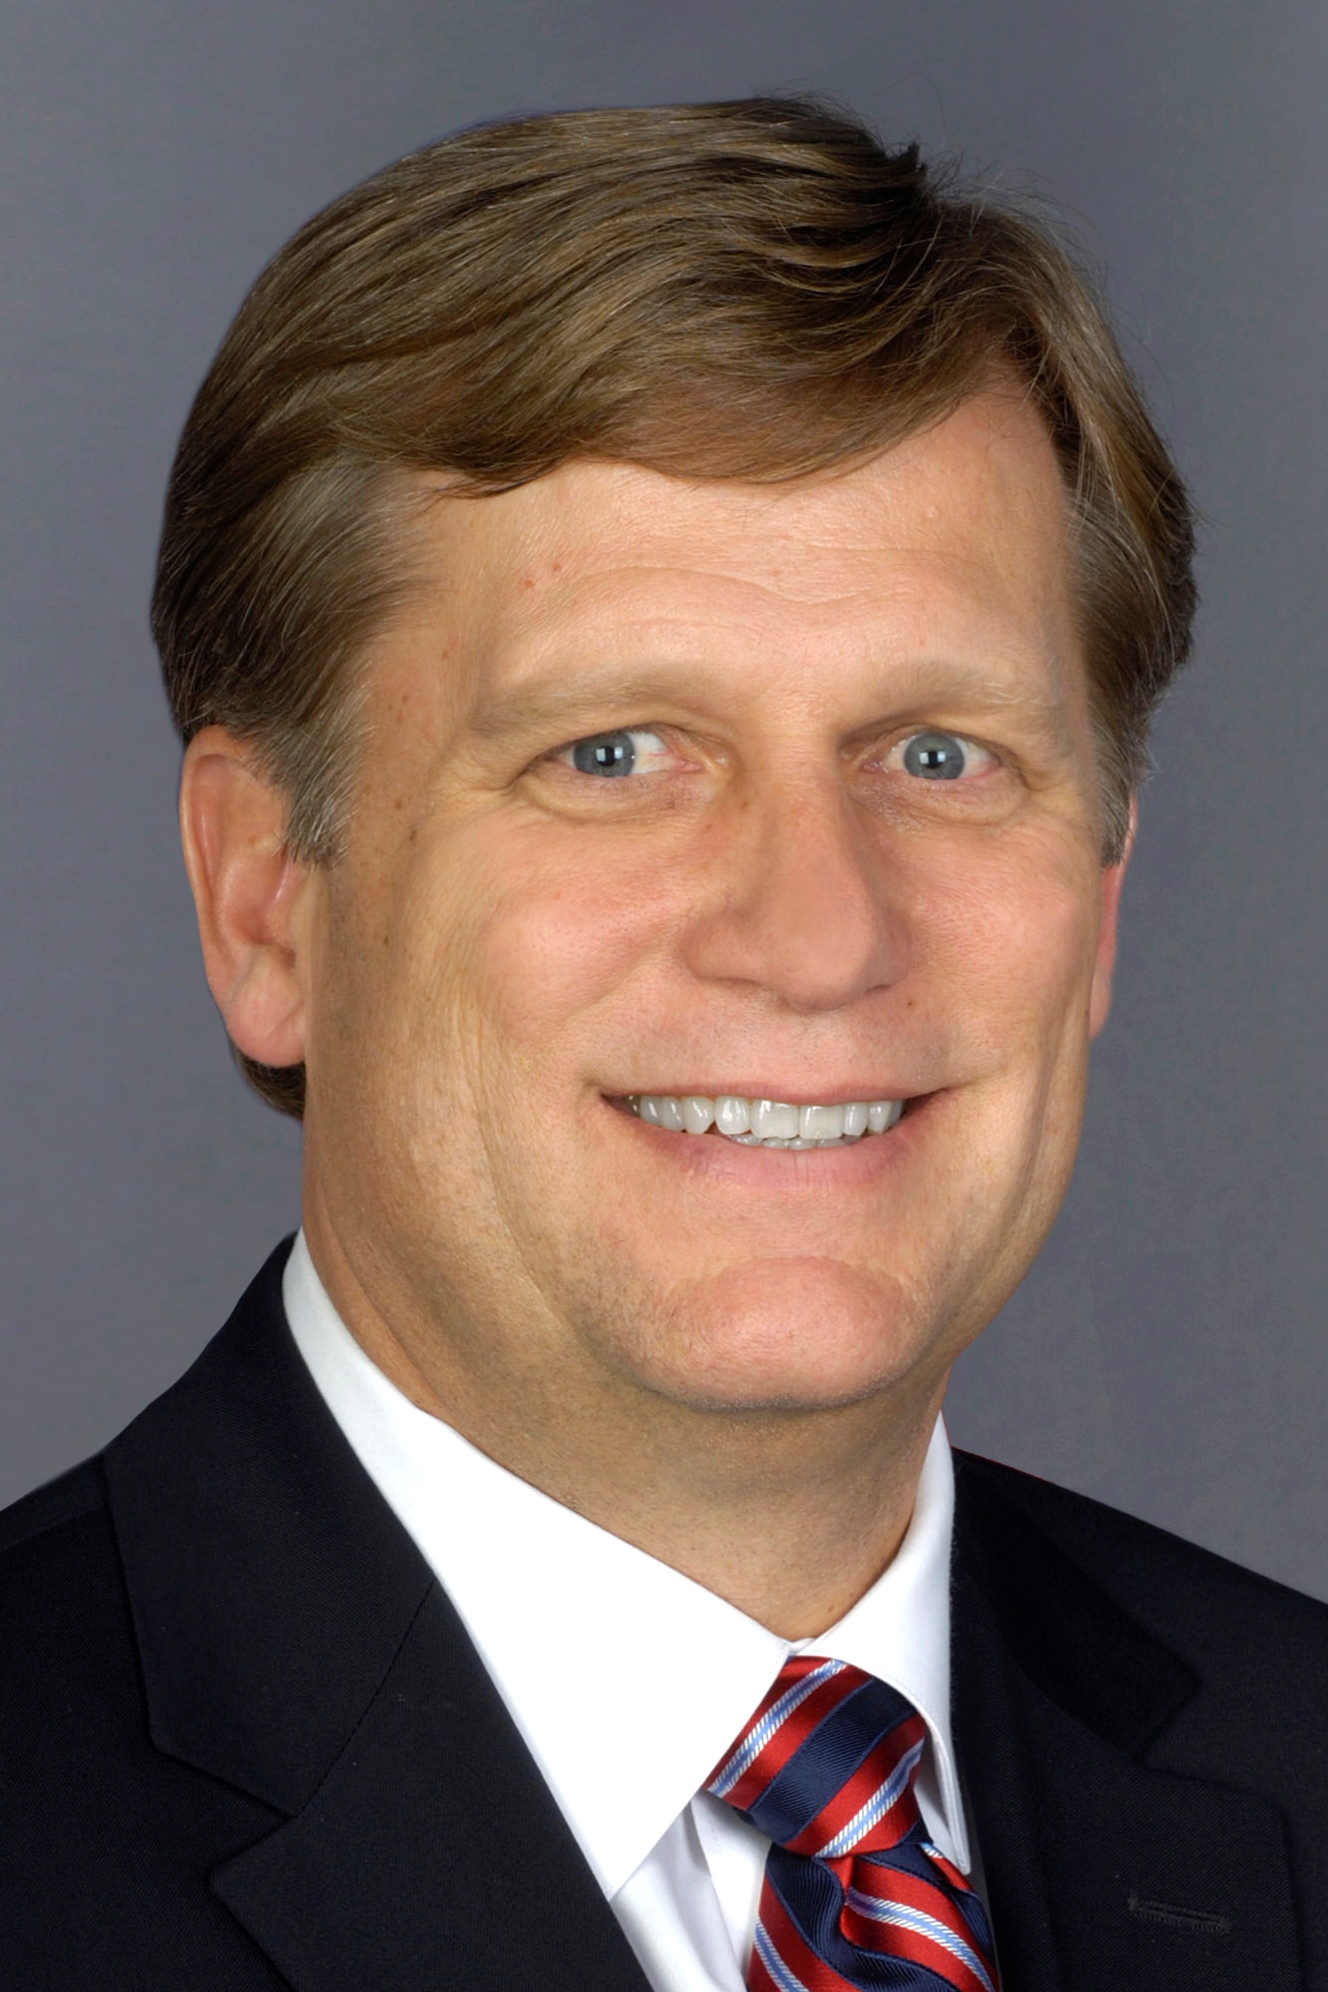 Head shot of Michael McFaul.